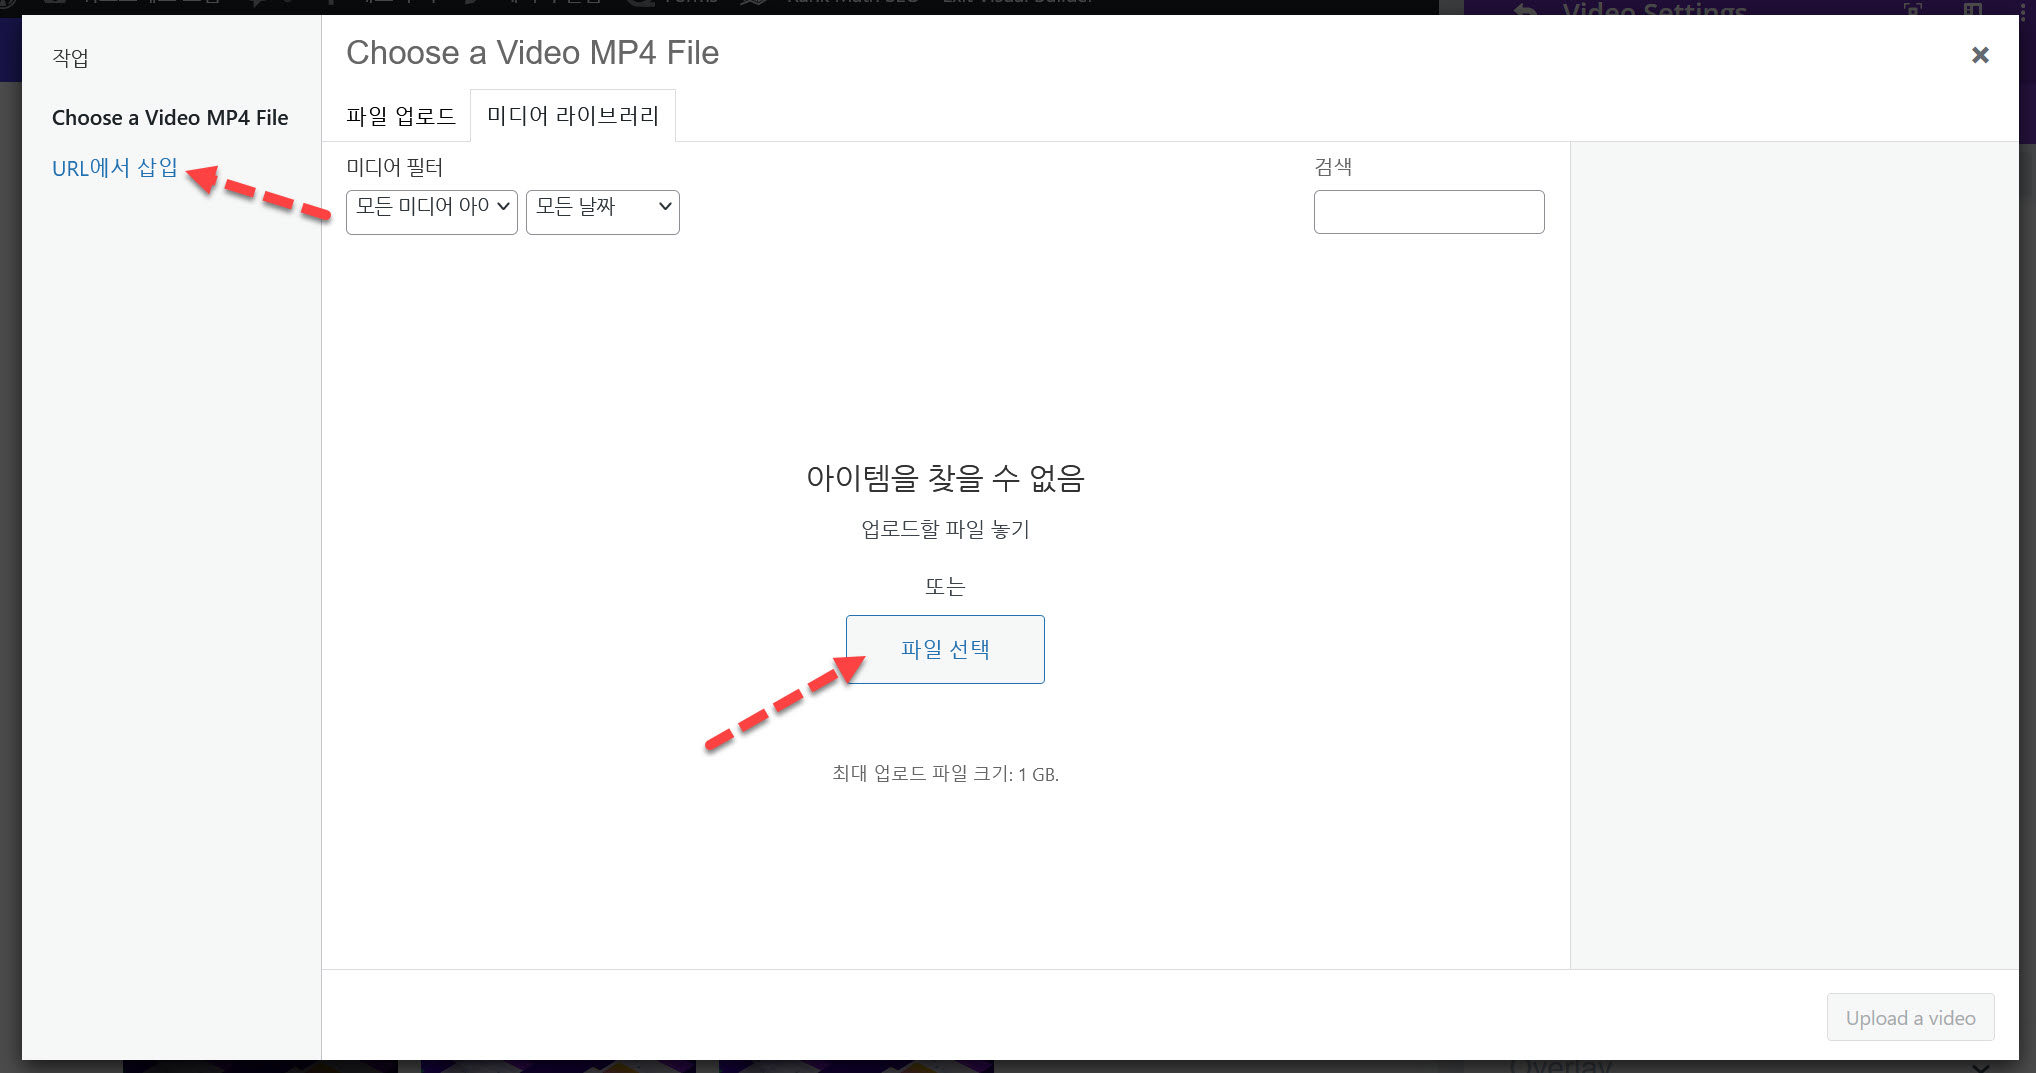 워드프레스 Divi 테마의 동영상 슬라이더 - MP4 파일 업로드 또는 URL에서 삽입하기